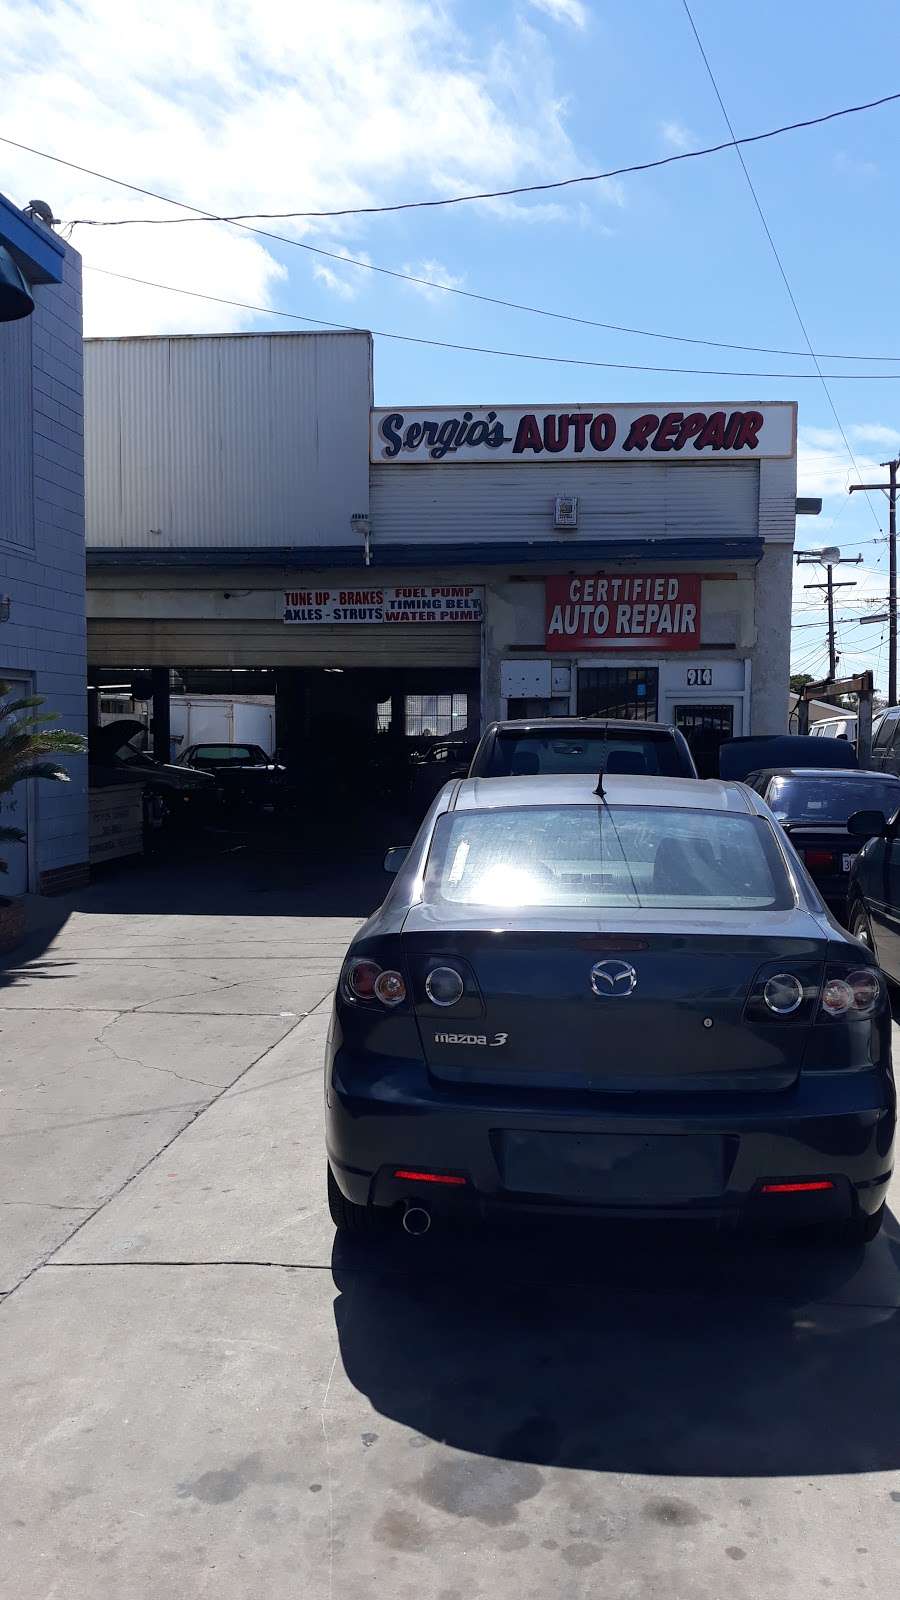 Sergios Auto Repair | 914 W Wooley Rd, Oxnard, CA 93030, USA | Phone: (805) 483-7901